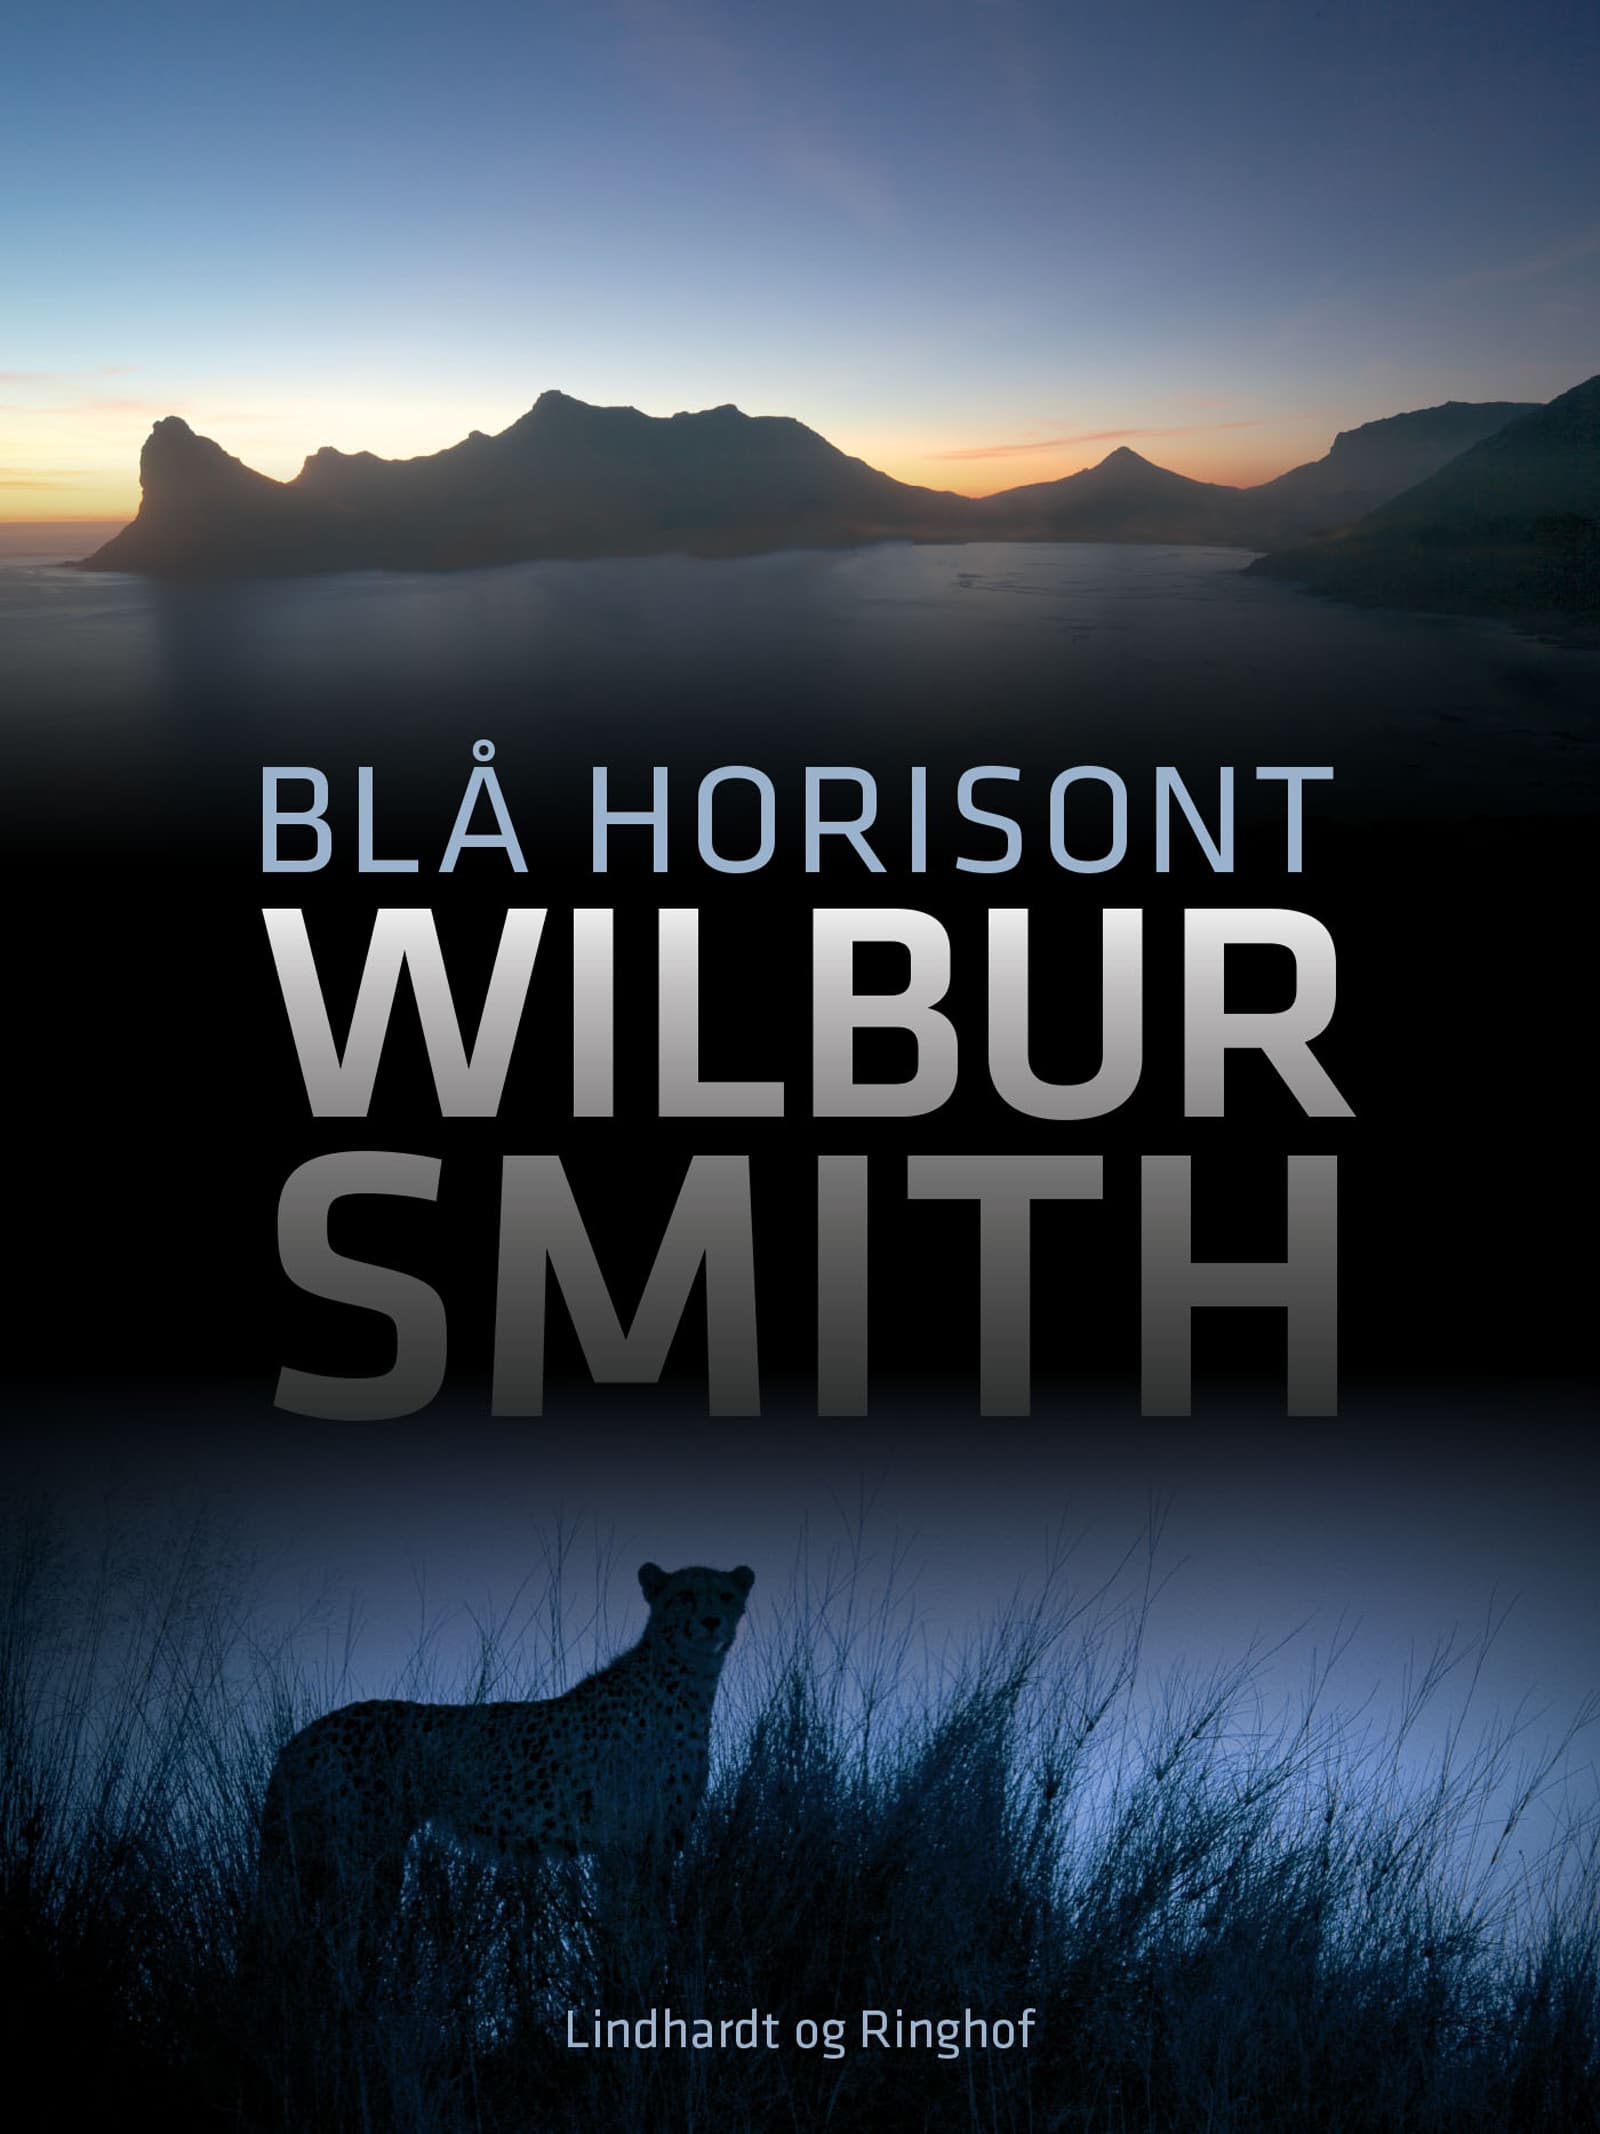 Blå horisont, Wilbur Smith, Courtney-serien